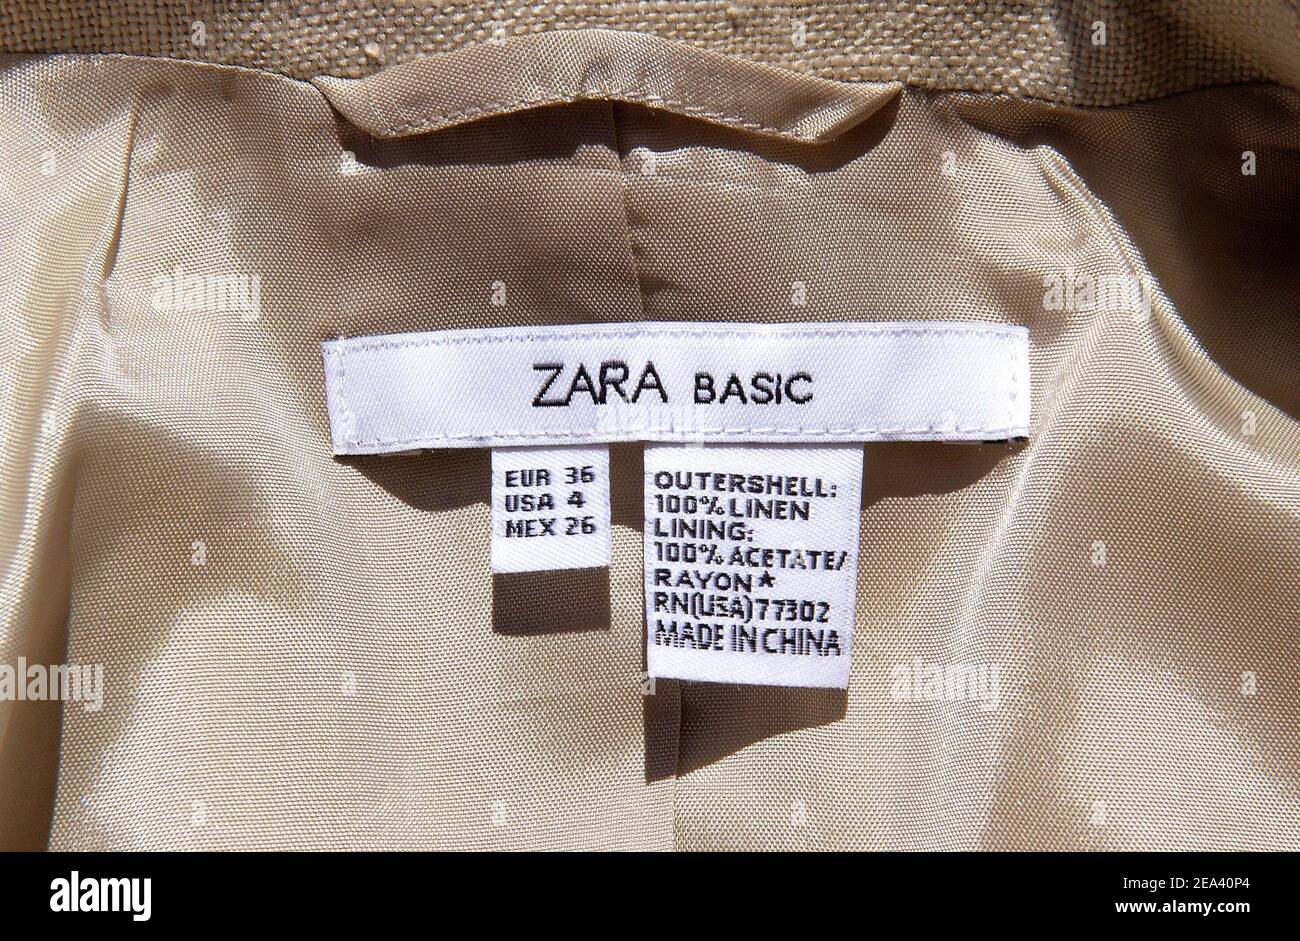 Made in China“-Etiketten auf „Zara Basic“-Kleidungsstücken. Die  Mitgliedstaaten der Europäischen Union bereiten sich darauf vor, Brüssel  für Notfallmaßnahmen zu drängen, die zu einer zügigen Anwendung von  Grenzwerten für boomende Textilimporte aus China